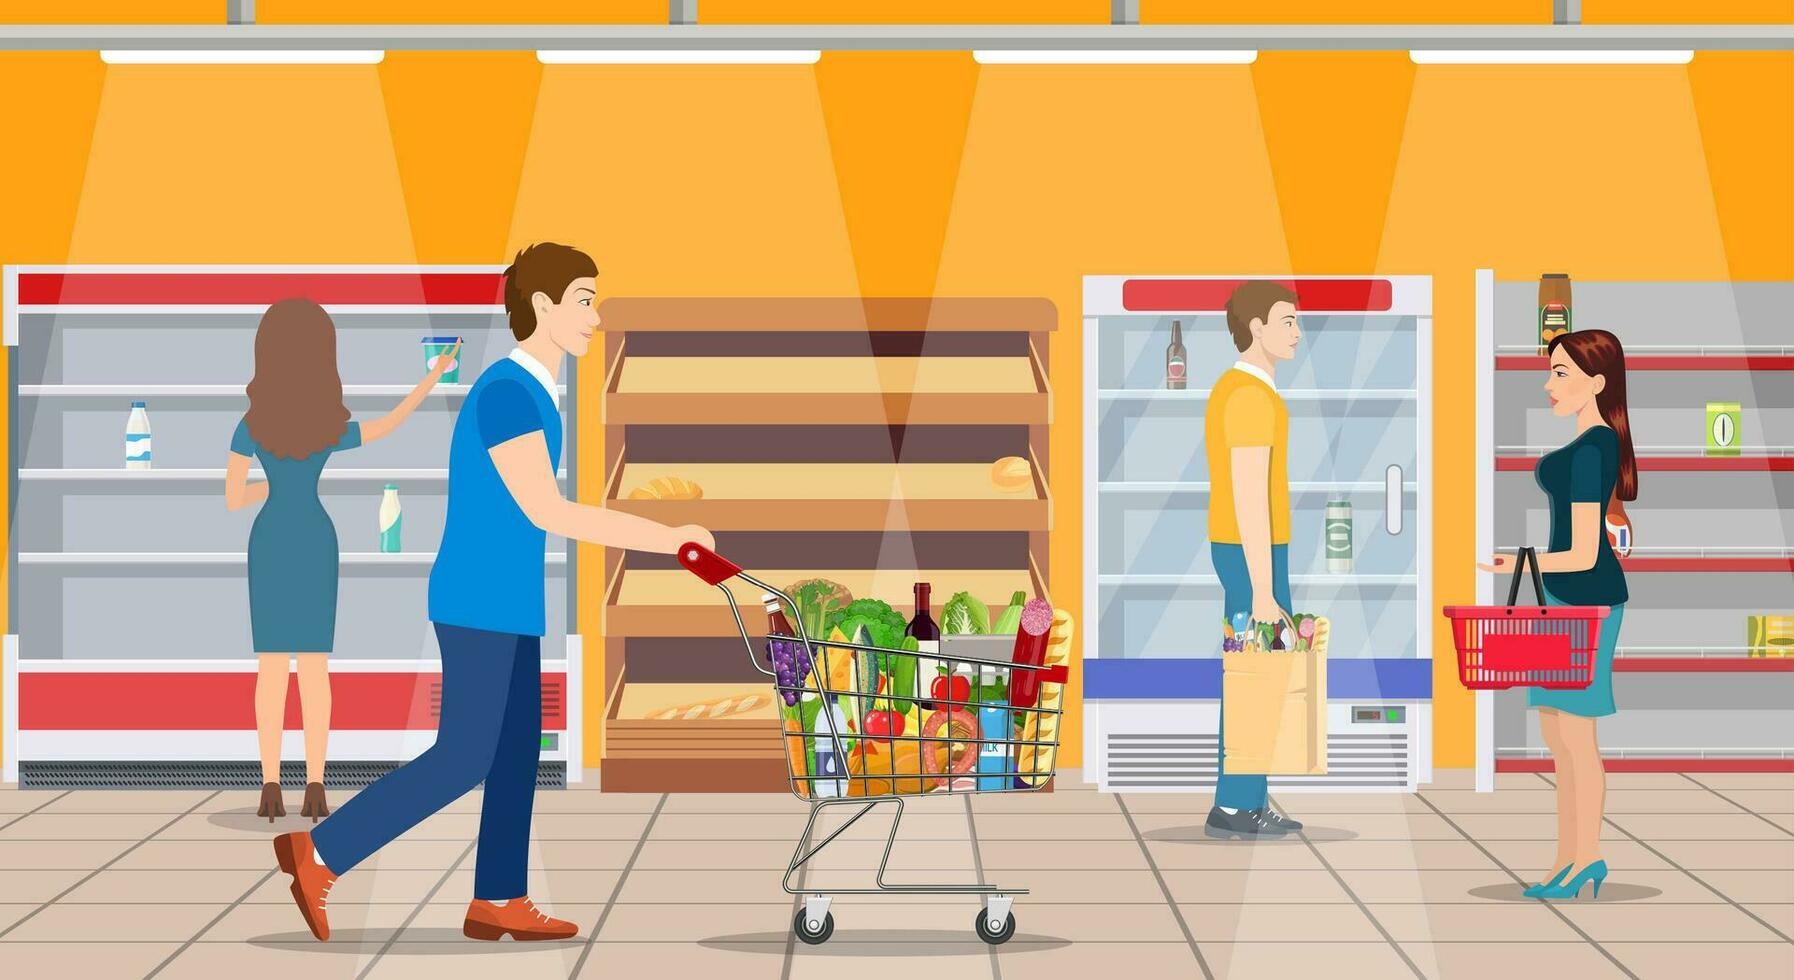 klanten mensen bij producten in supermarkt. kruidenier en consumentisme concept. leeg op te slaan planken. vector illustratie in vlak stijl